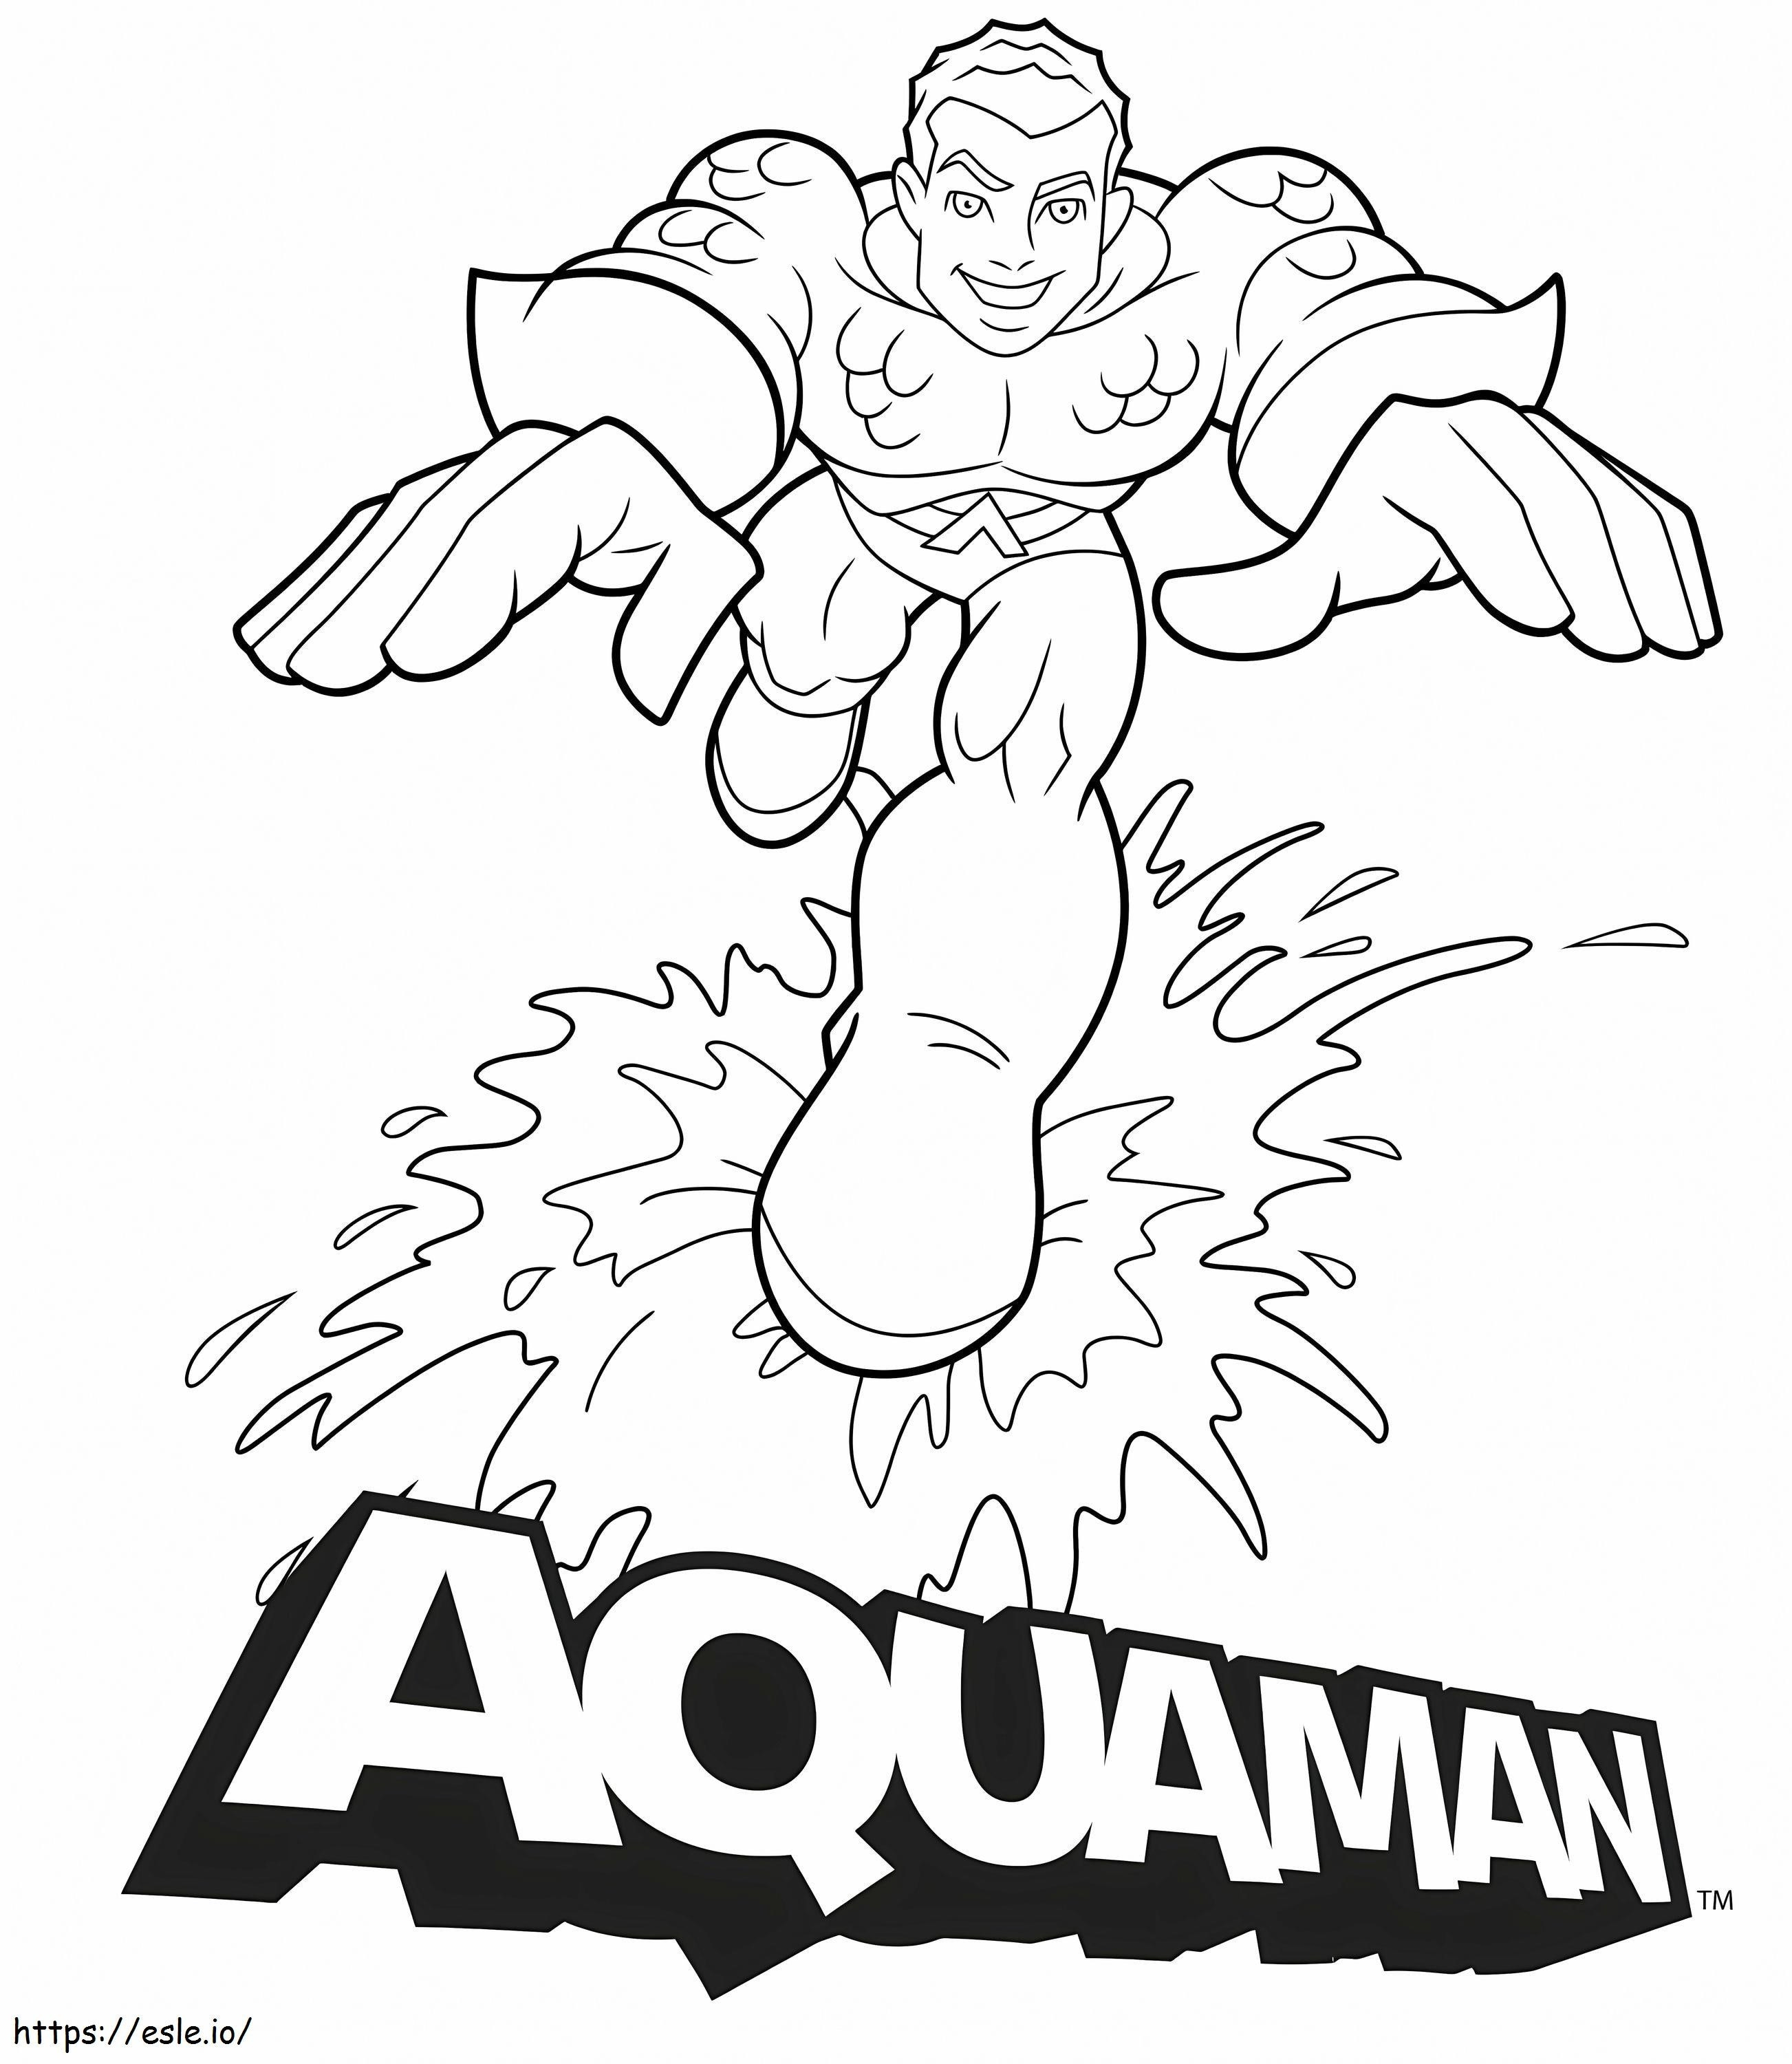 Aquaman Fun coloring page